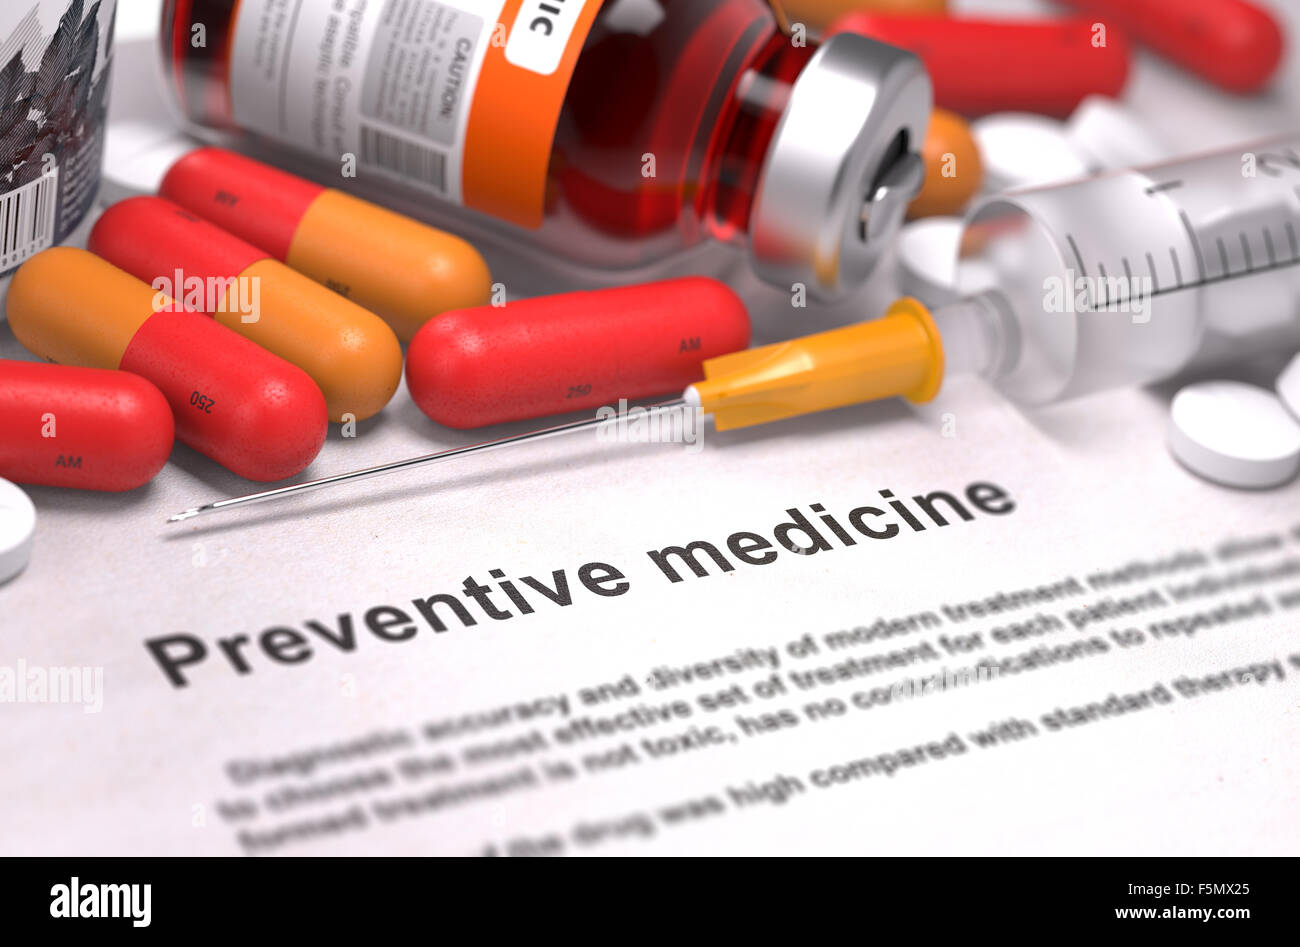 Preventive Medicine - Medical Concept. Stock Photo